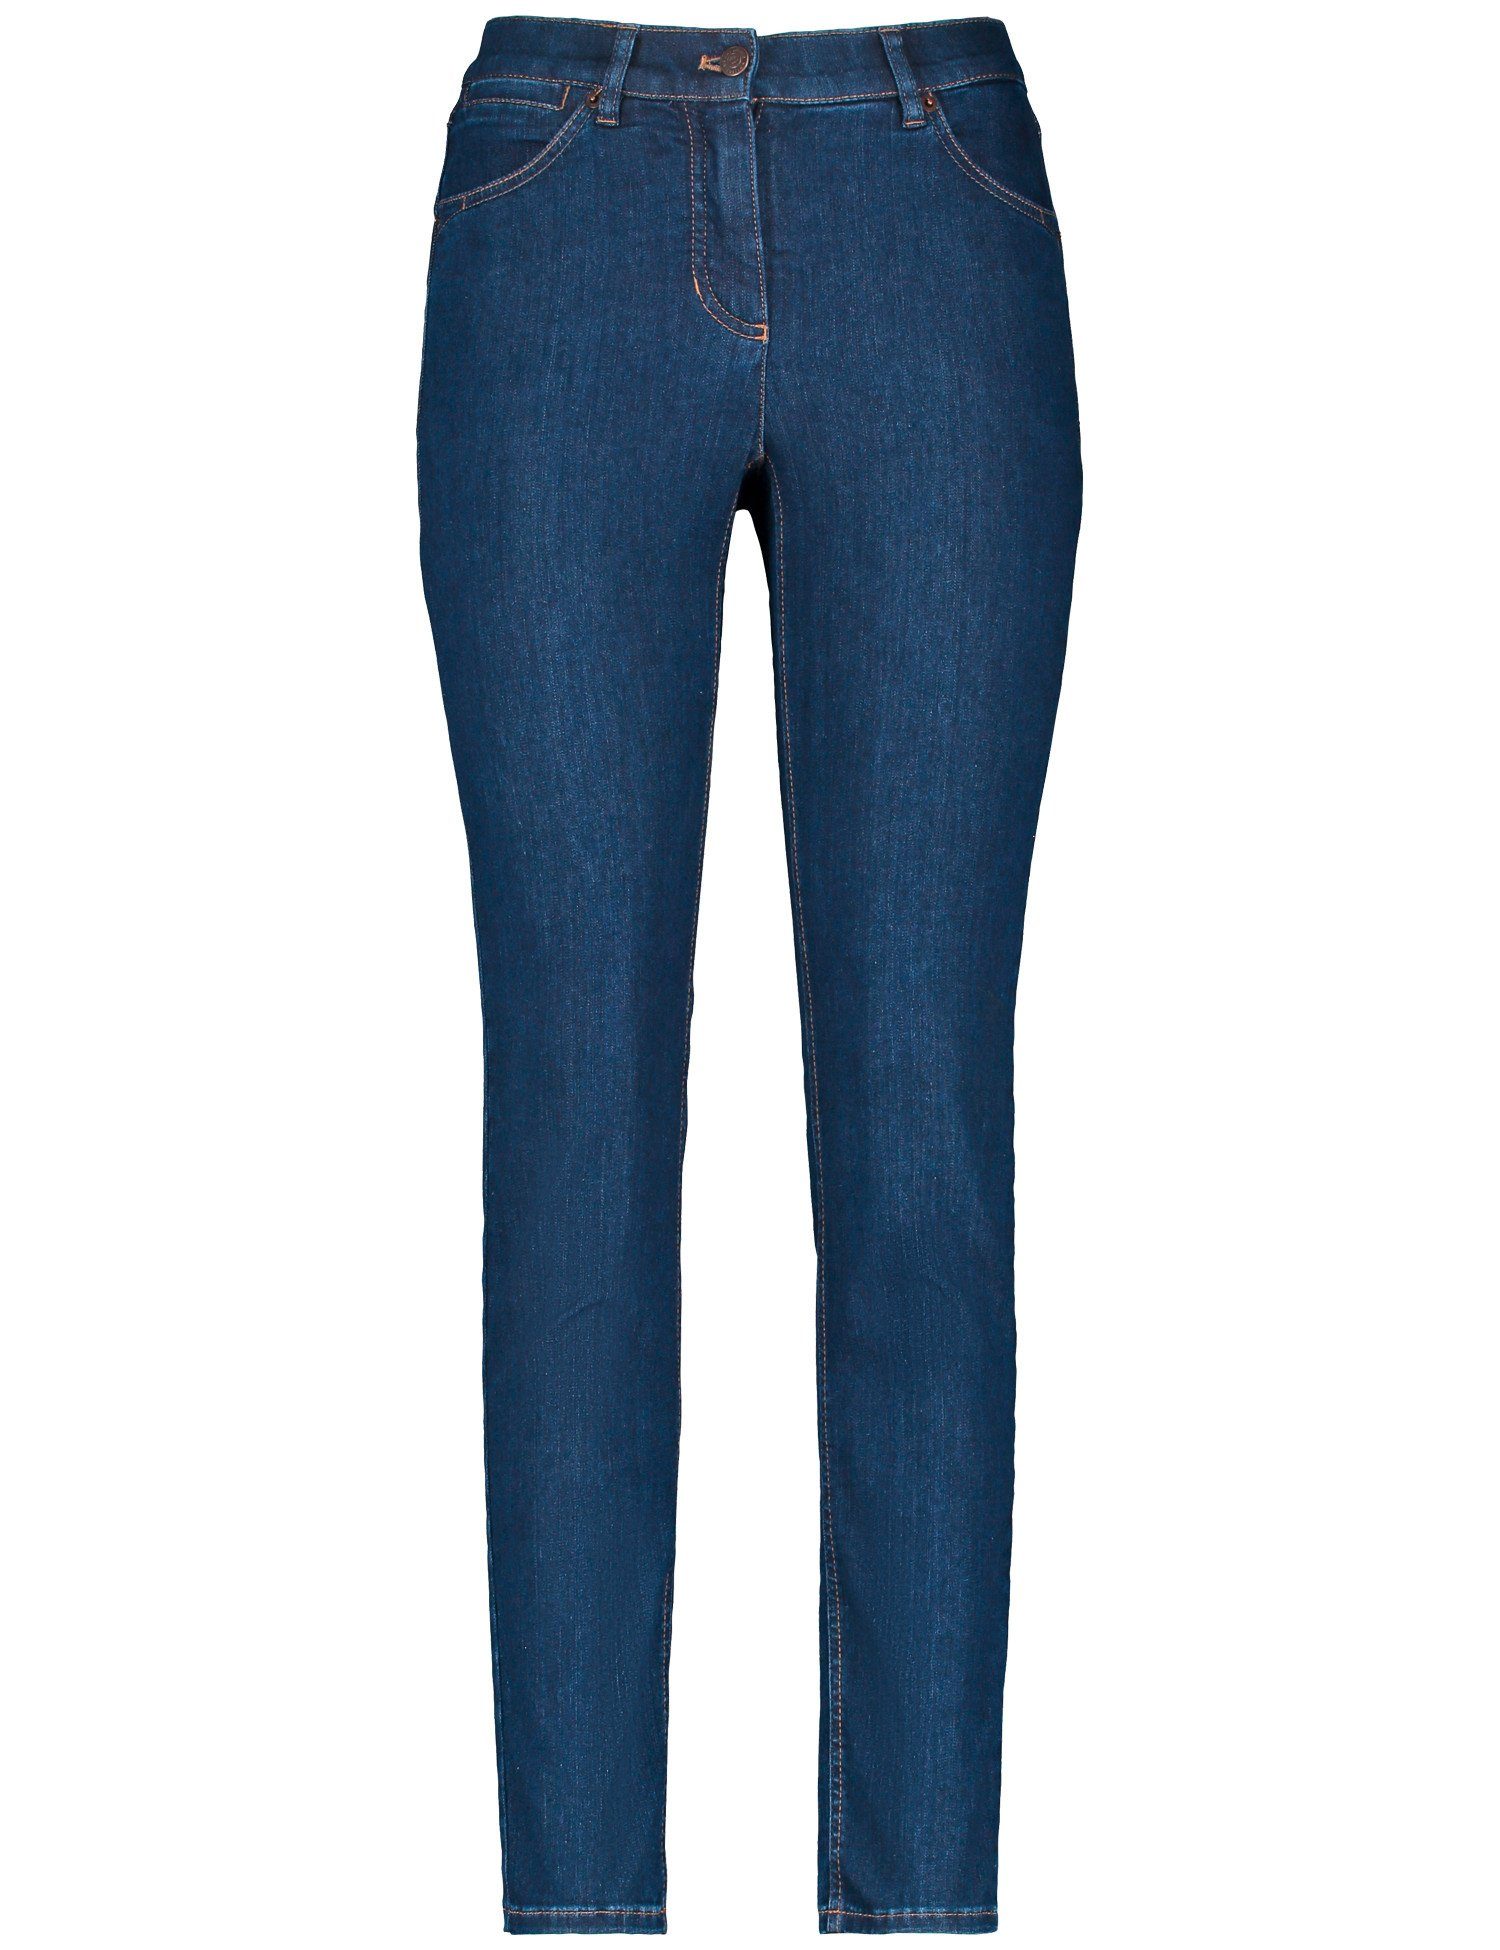 WEBER Jeans GERRY Stretch-Jeans Denim Blue Skinny Best4me 5-Pocket